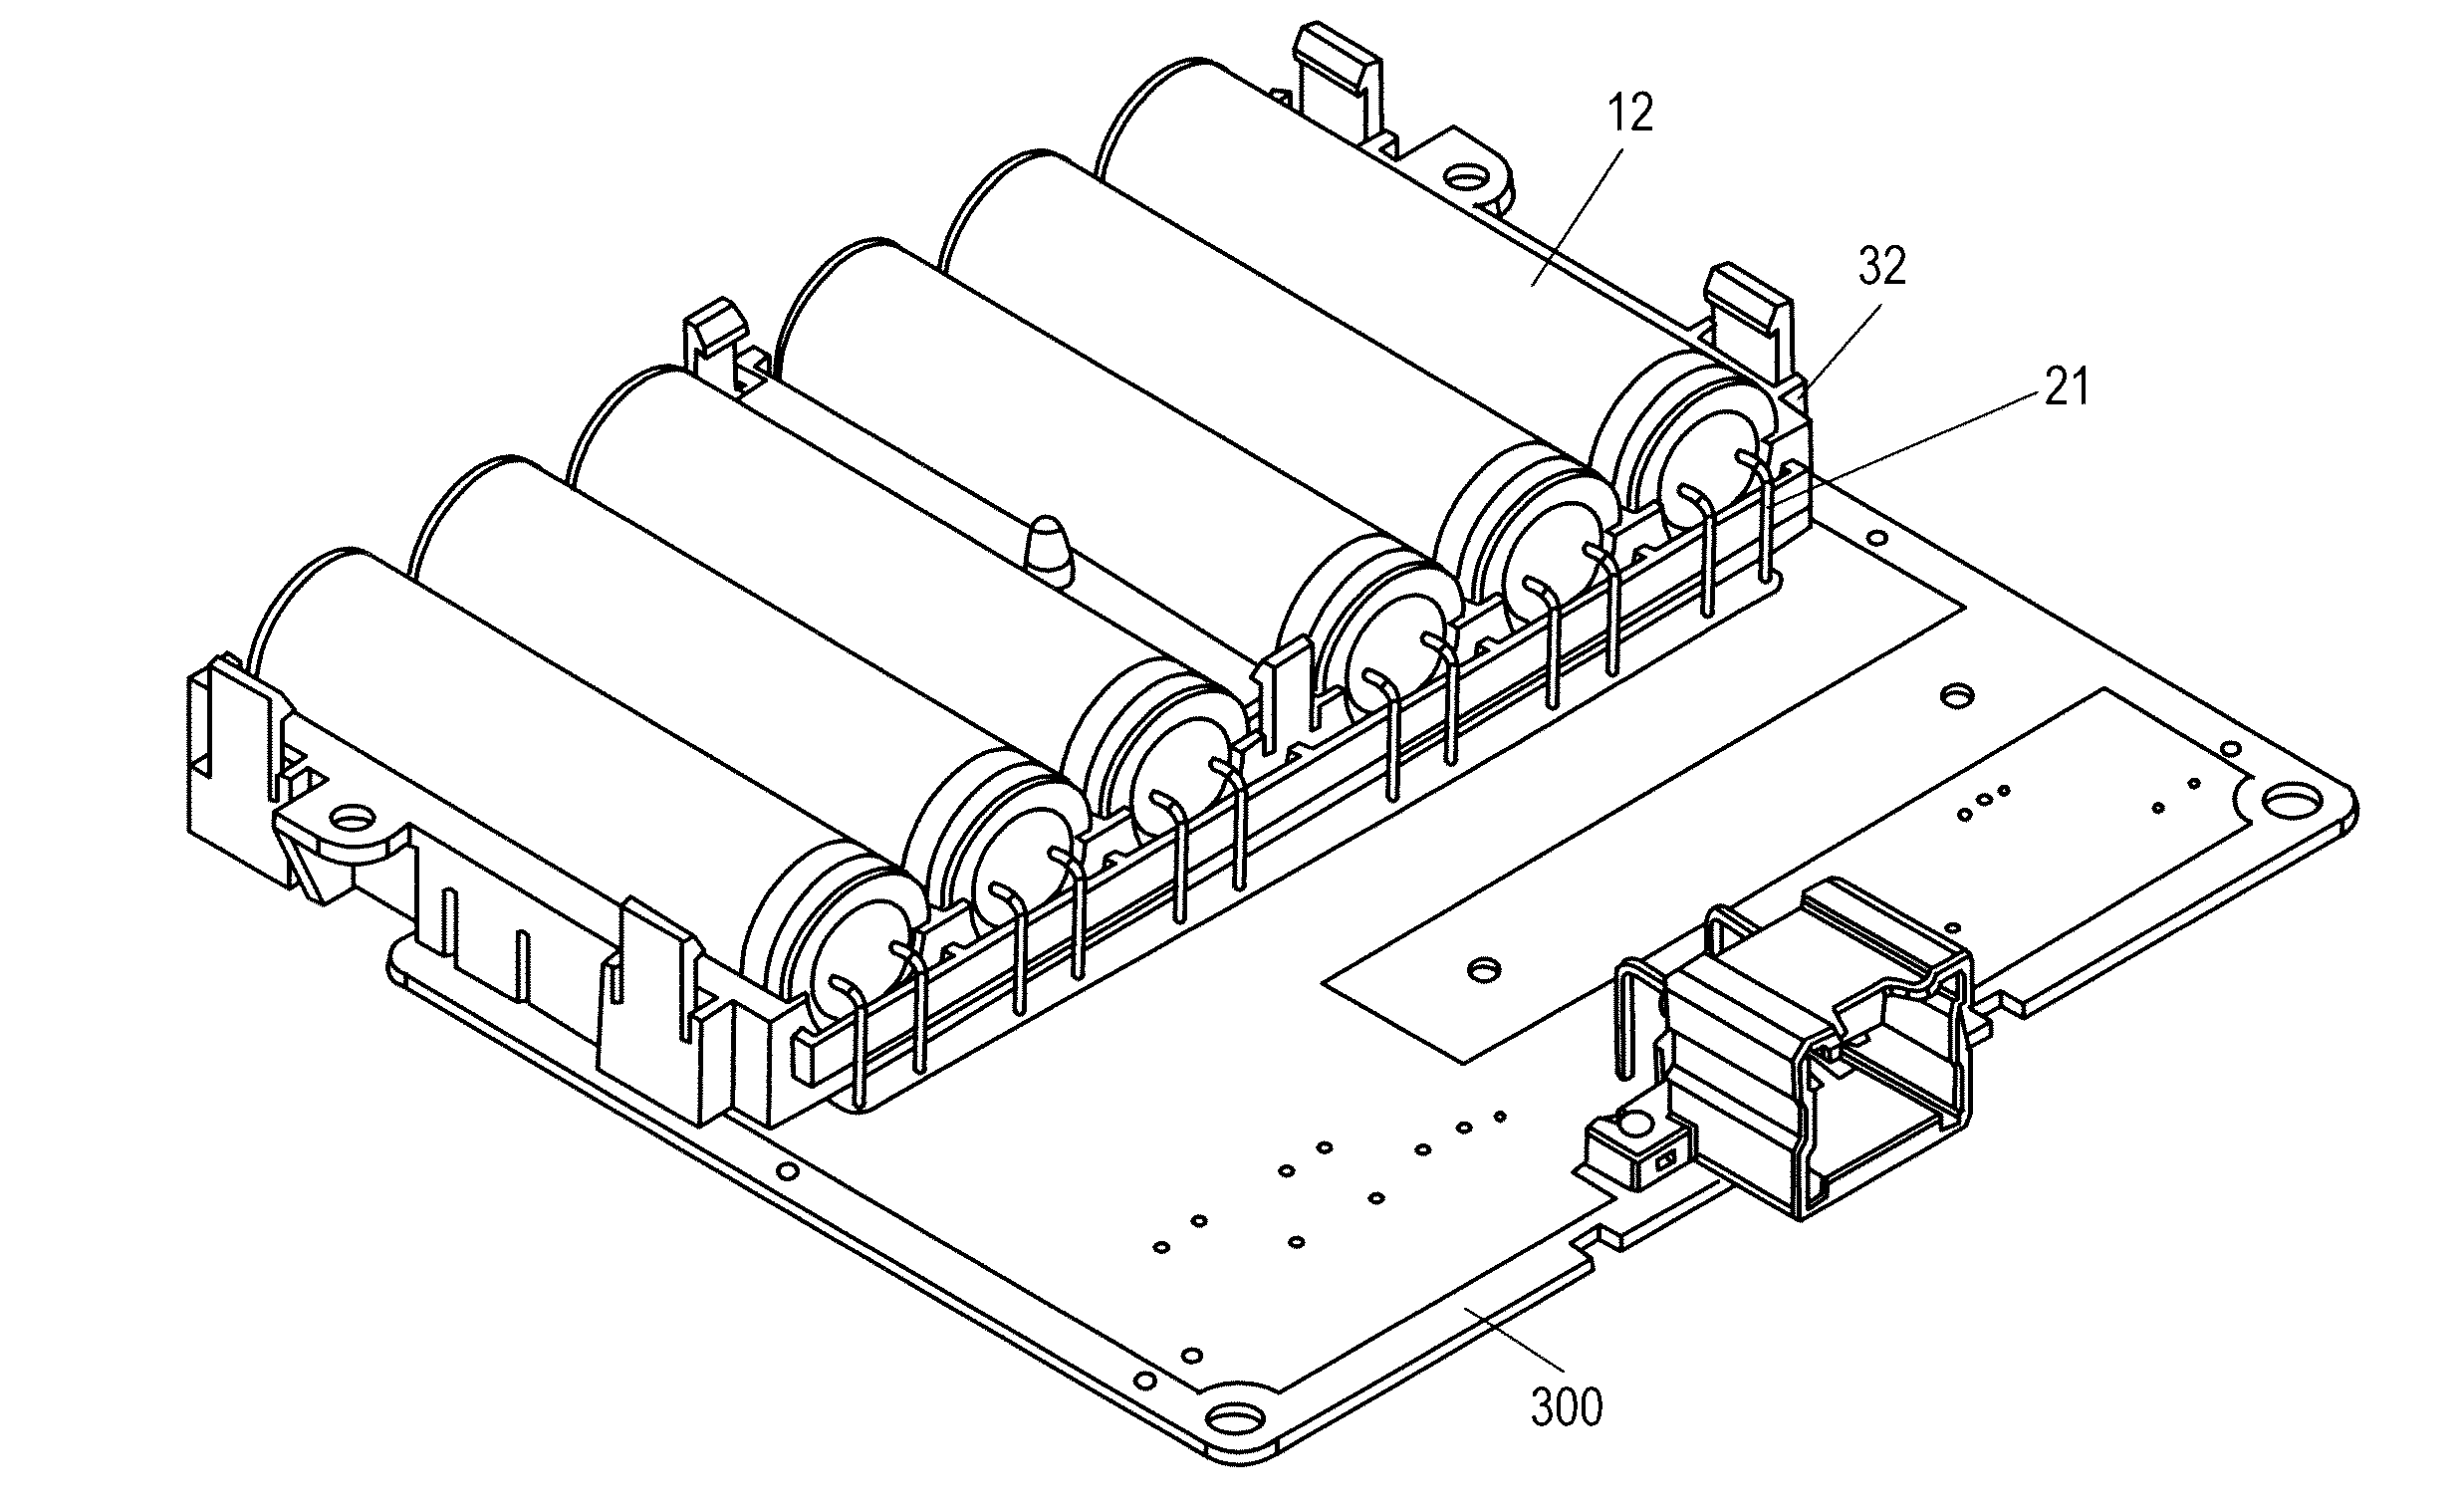 Capacitor module